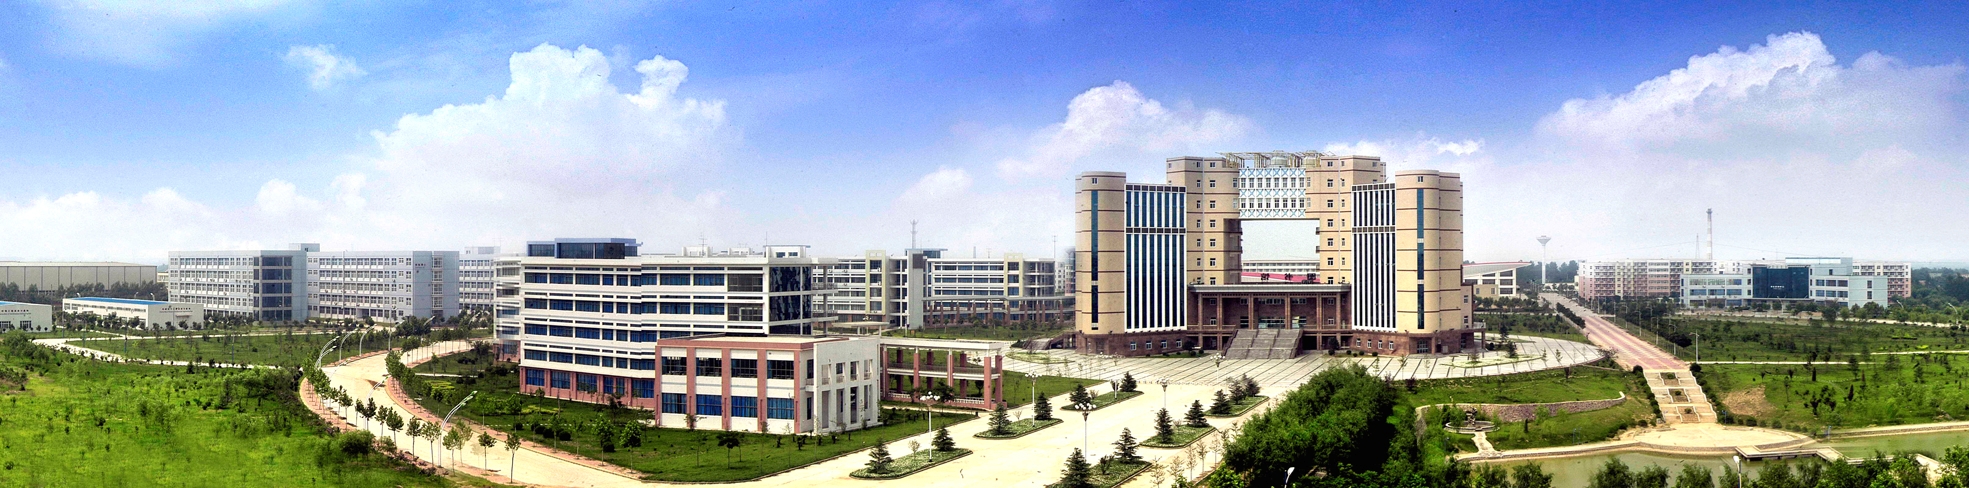 河南工程学院校园风景(86777)